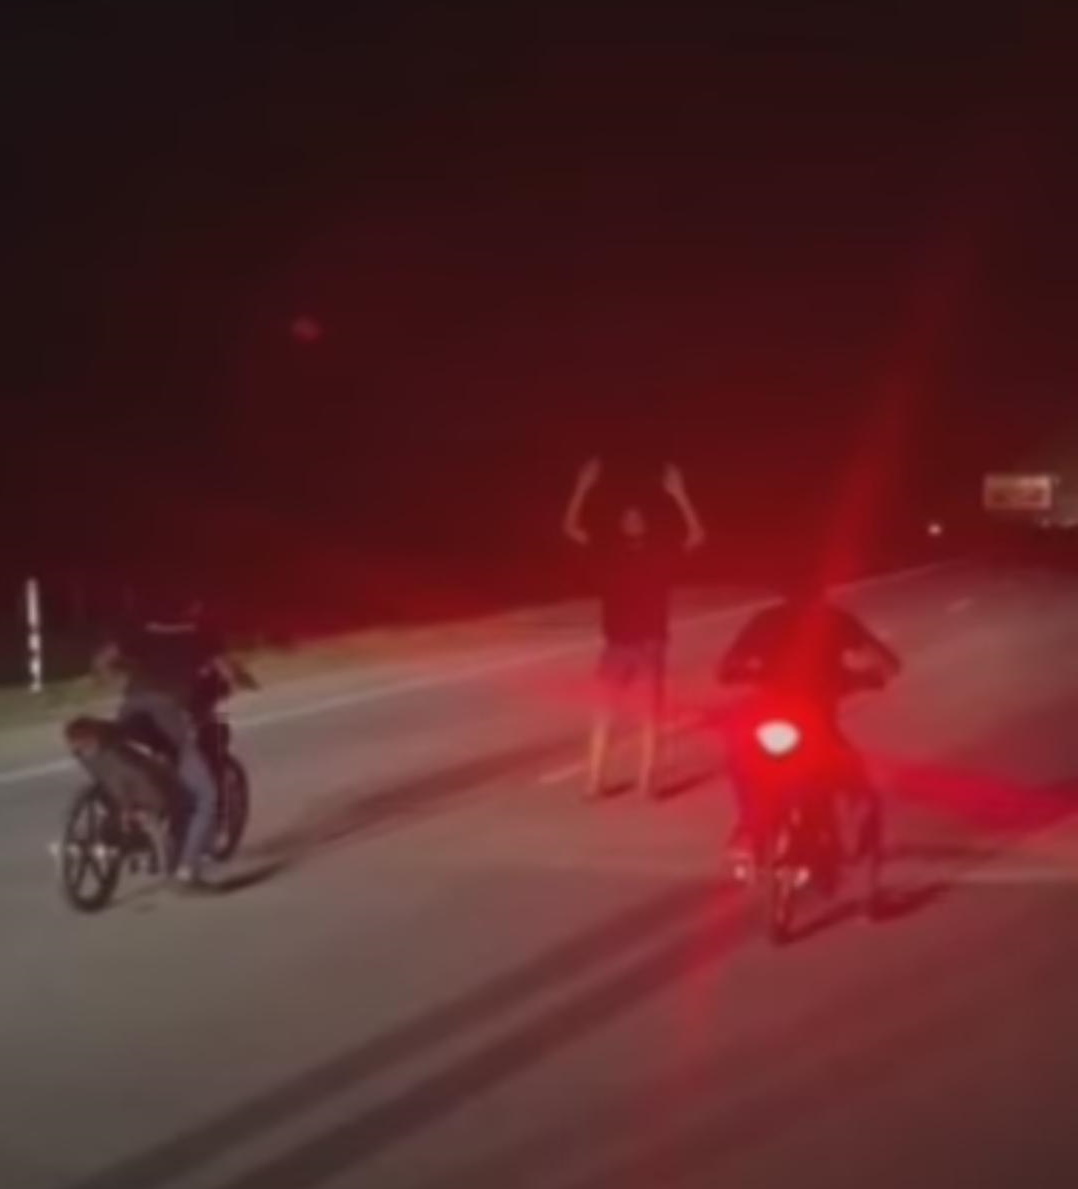 在西海岸大道飙摩托车危险表演  3男被警扣留查办